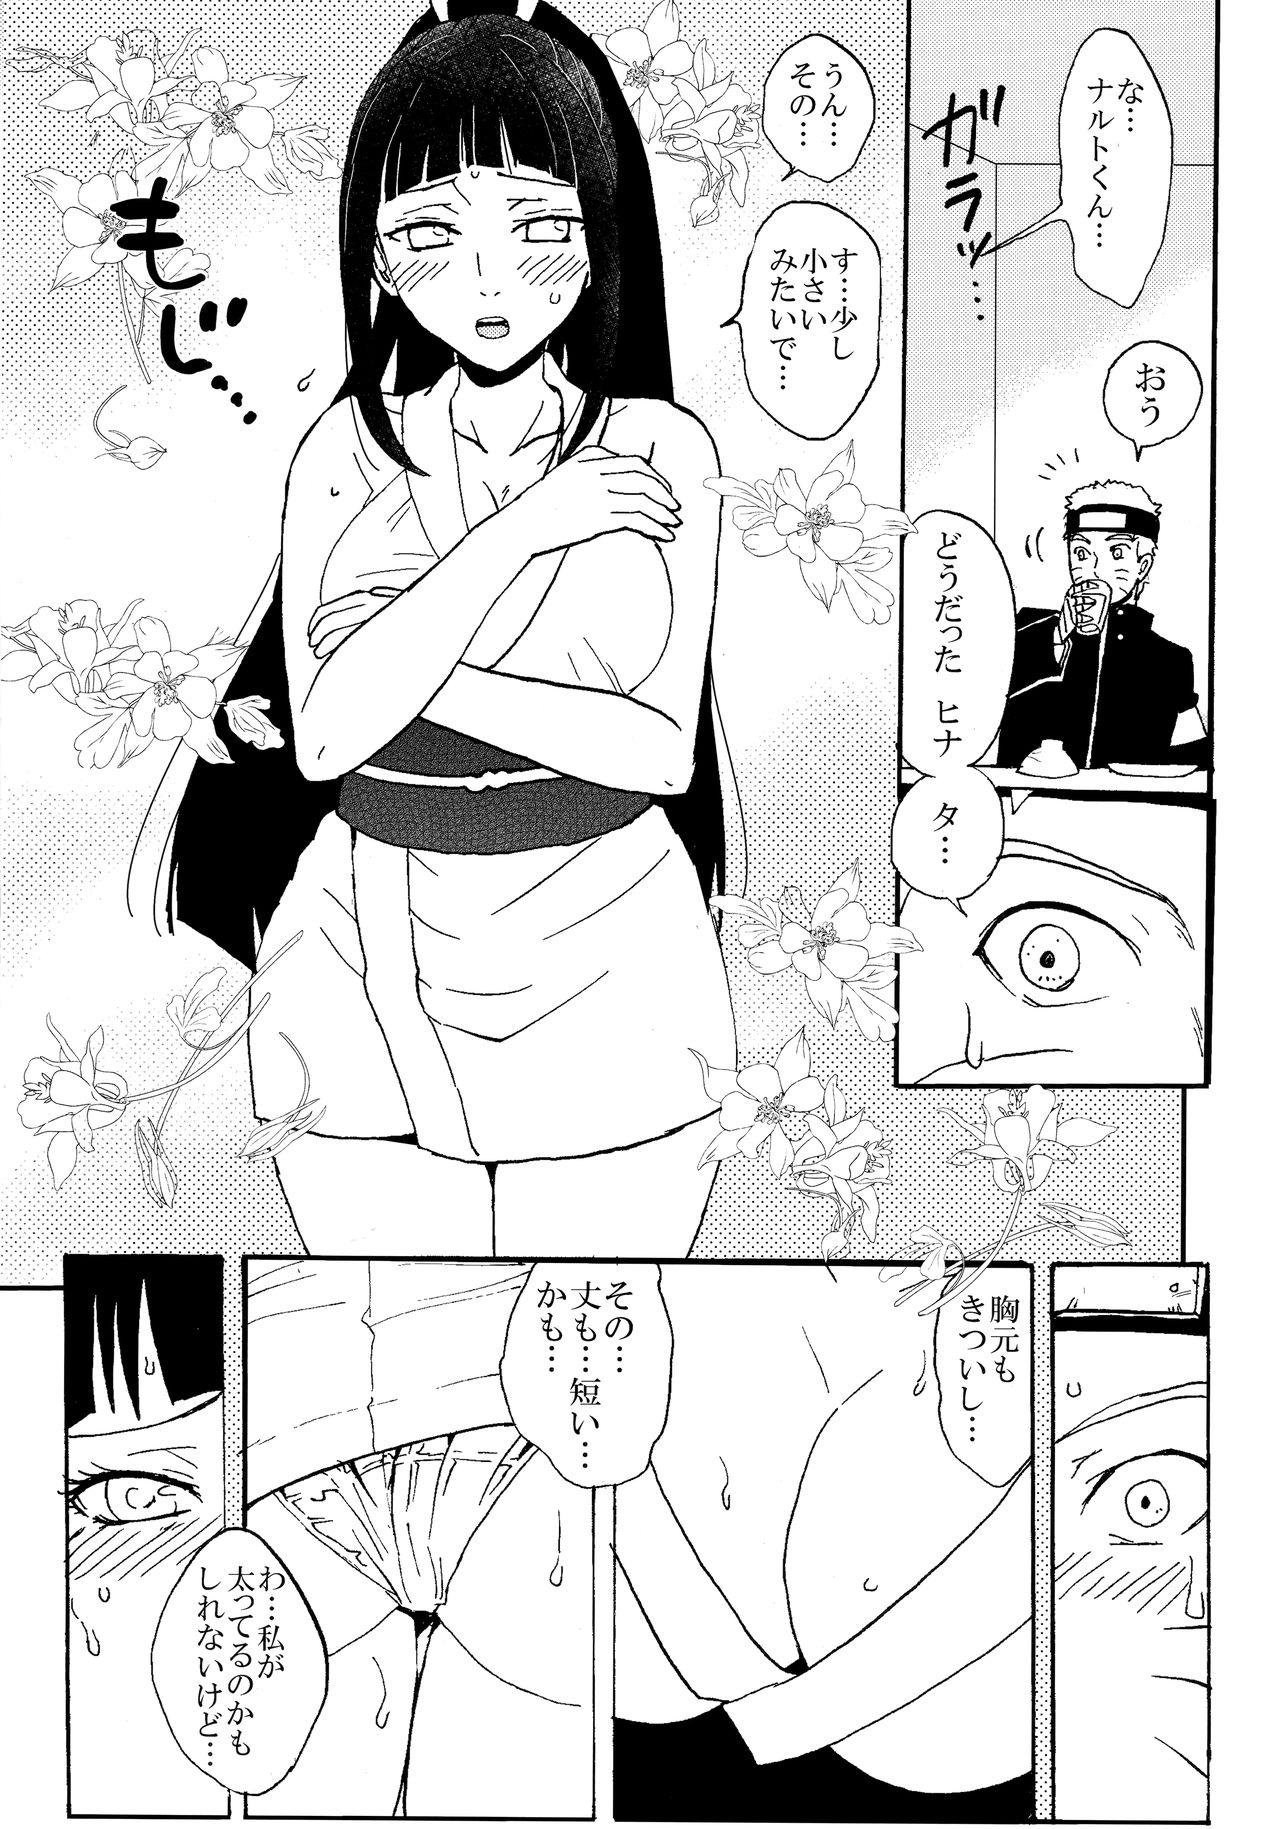 Milfporn Shinkon Hinata no Kunoichi Cosplay datteba yo! - Naruto Shavedpussy - Page 4